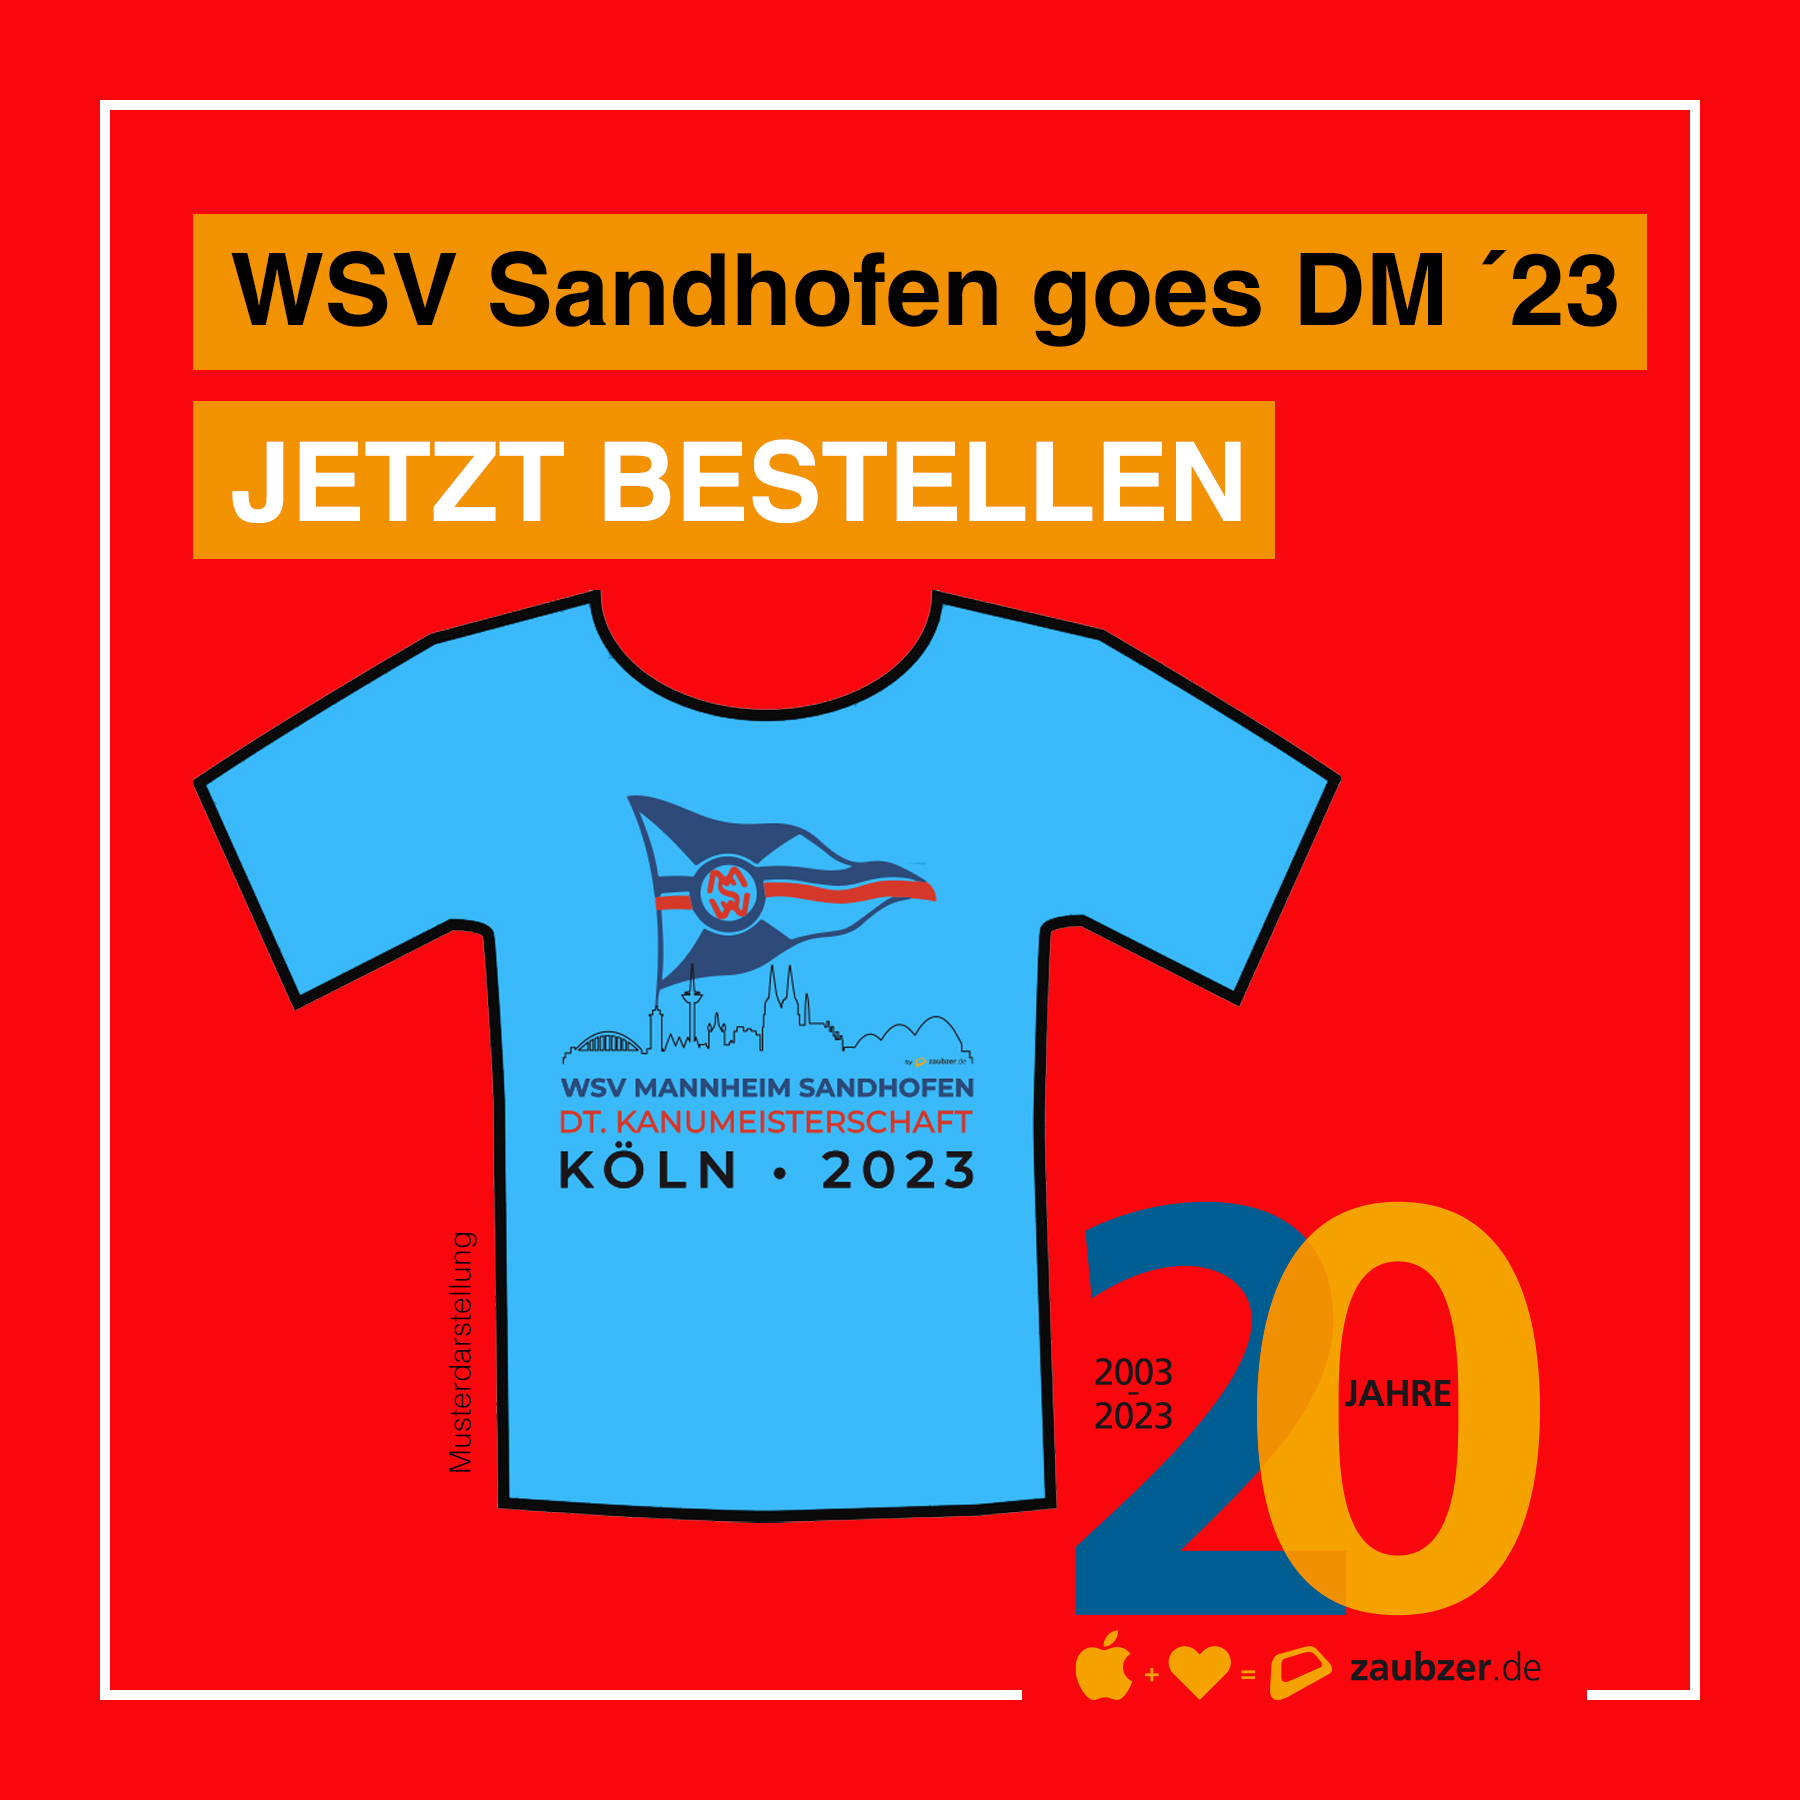 Der WSV Sandhofen fährt zur Deutschen Meisterschaft nach Köln - zaubzer.de - Mannheim